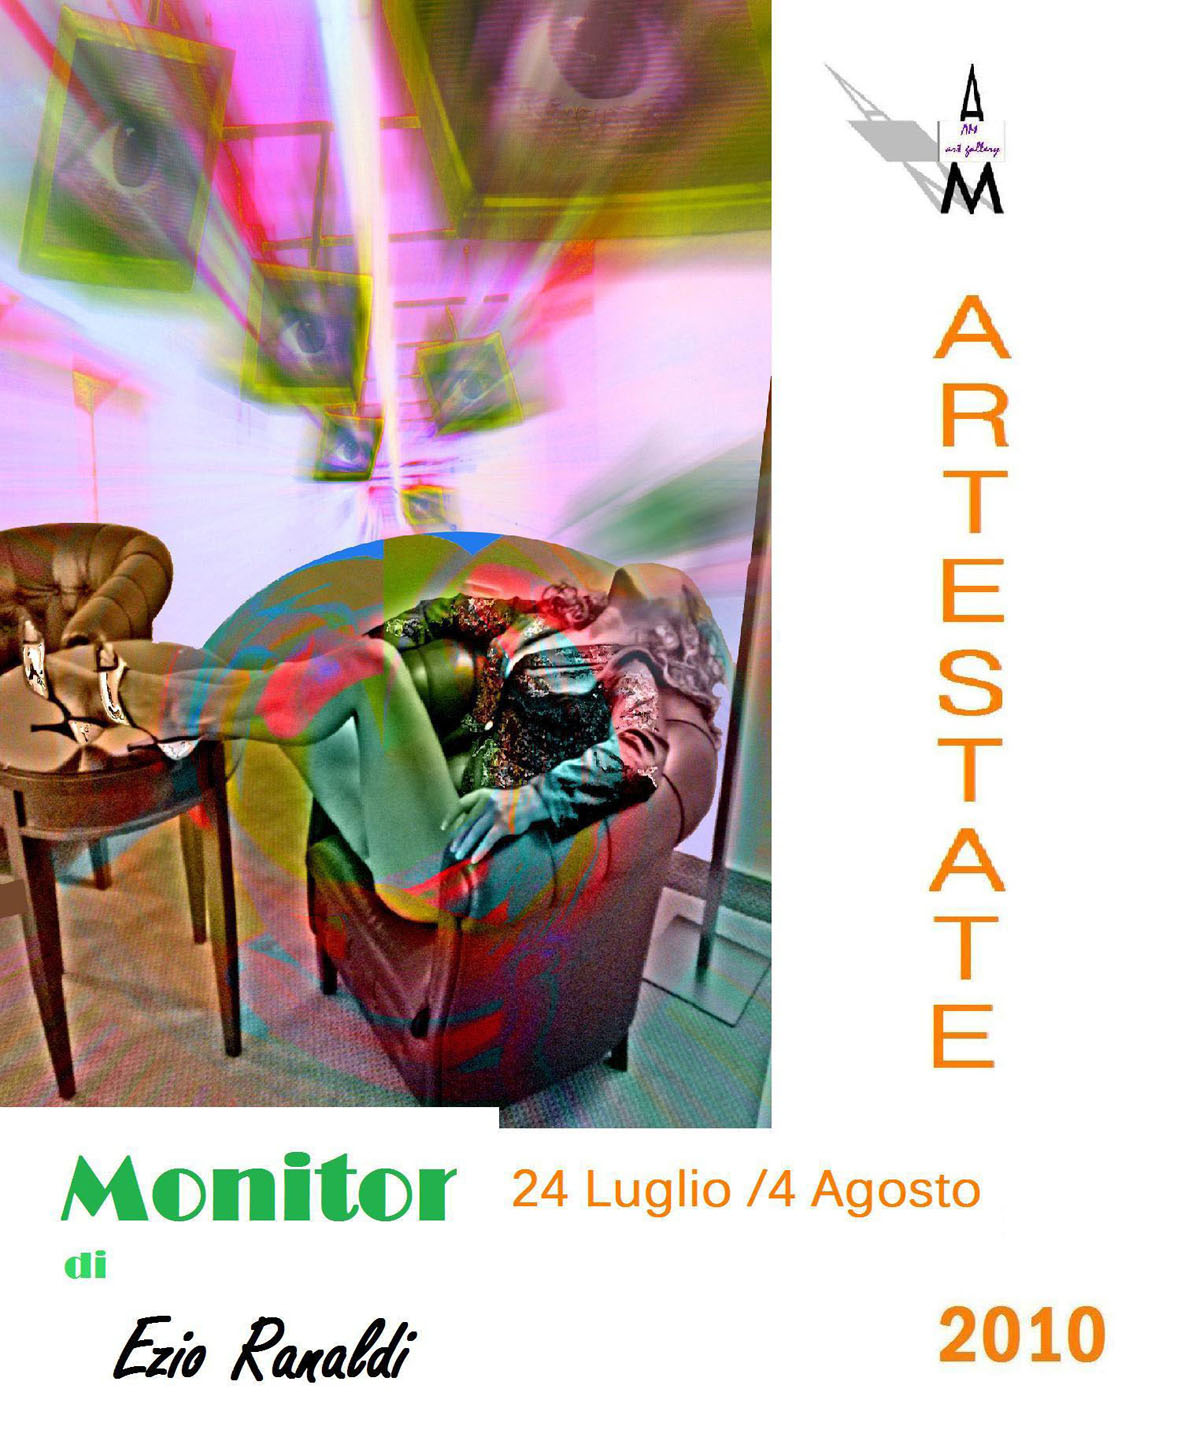 Ezio Ranaldi – ARTE estate 2010 giovinazzo copia